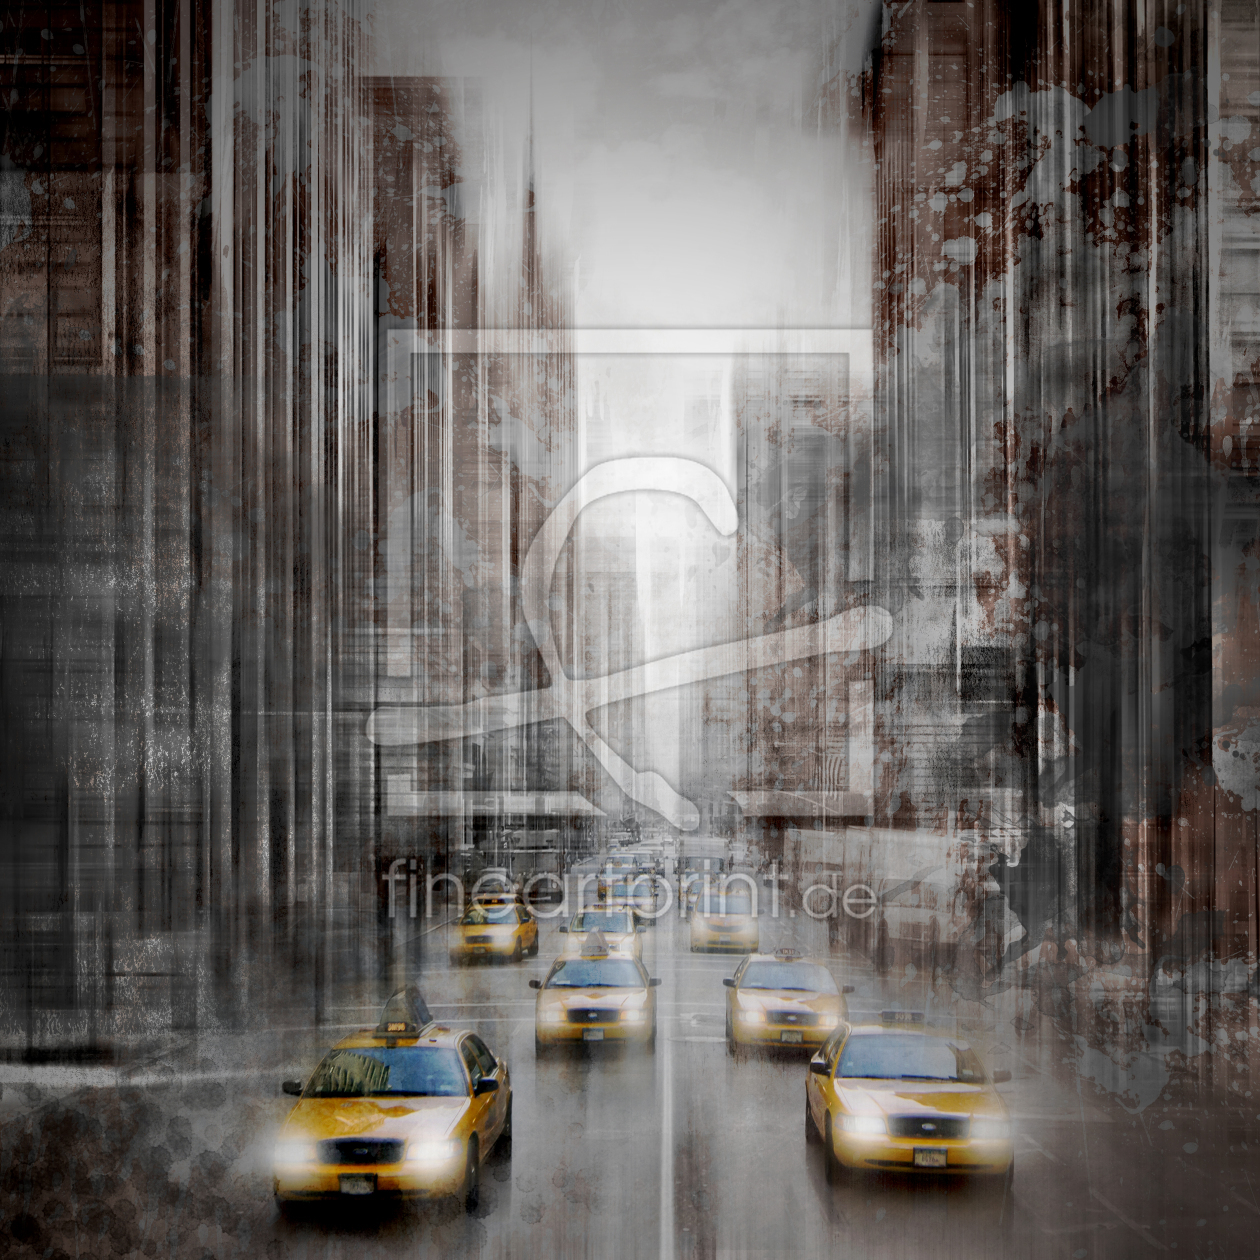 Bild-Nr.: 11635391 City-Art NYC 5th Avenue Verkehr erstellt von Melanie Viola